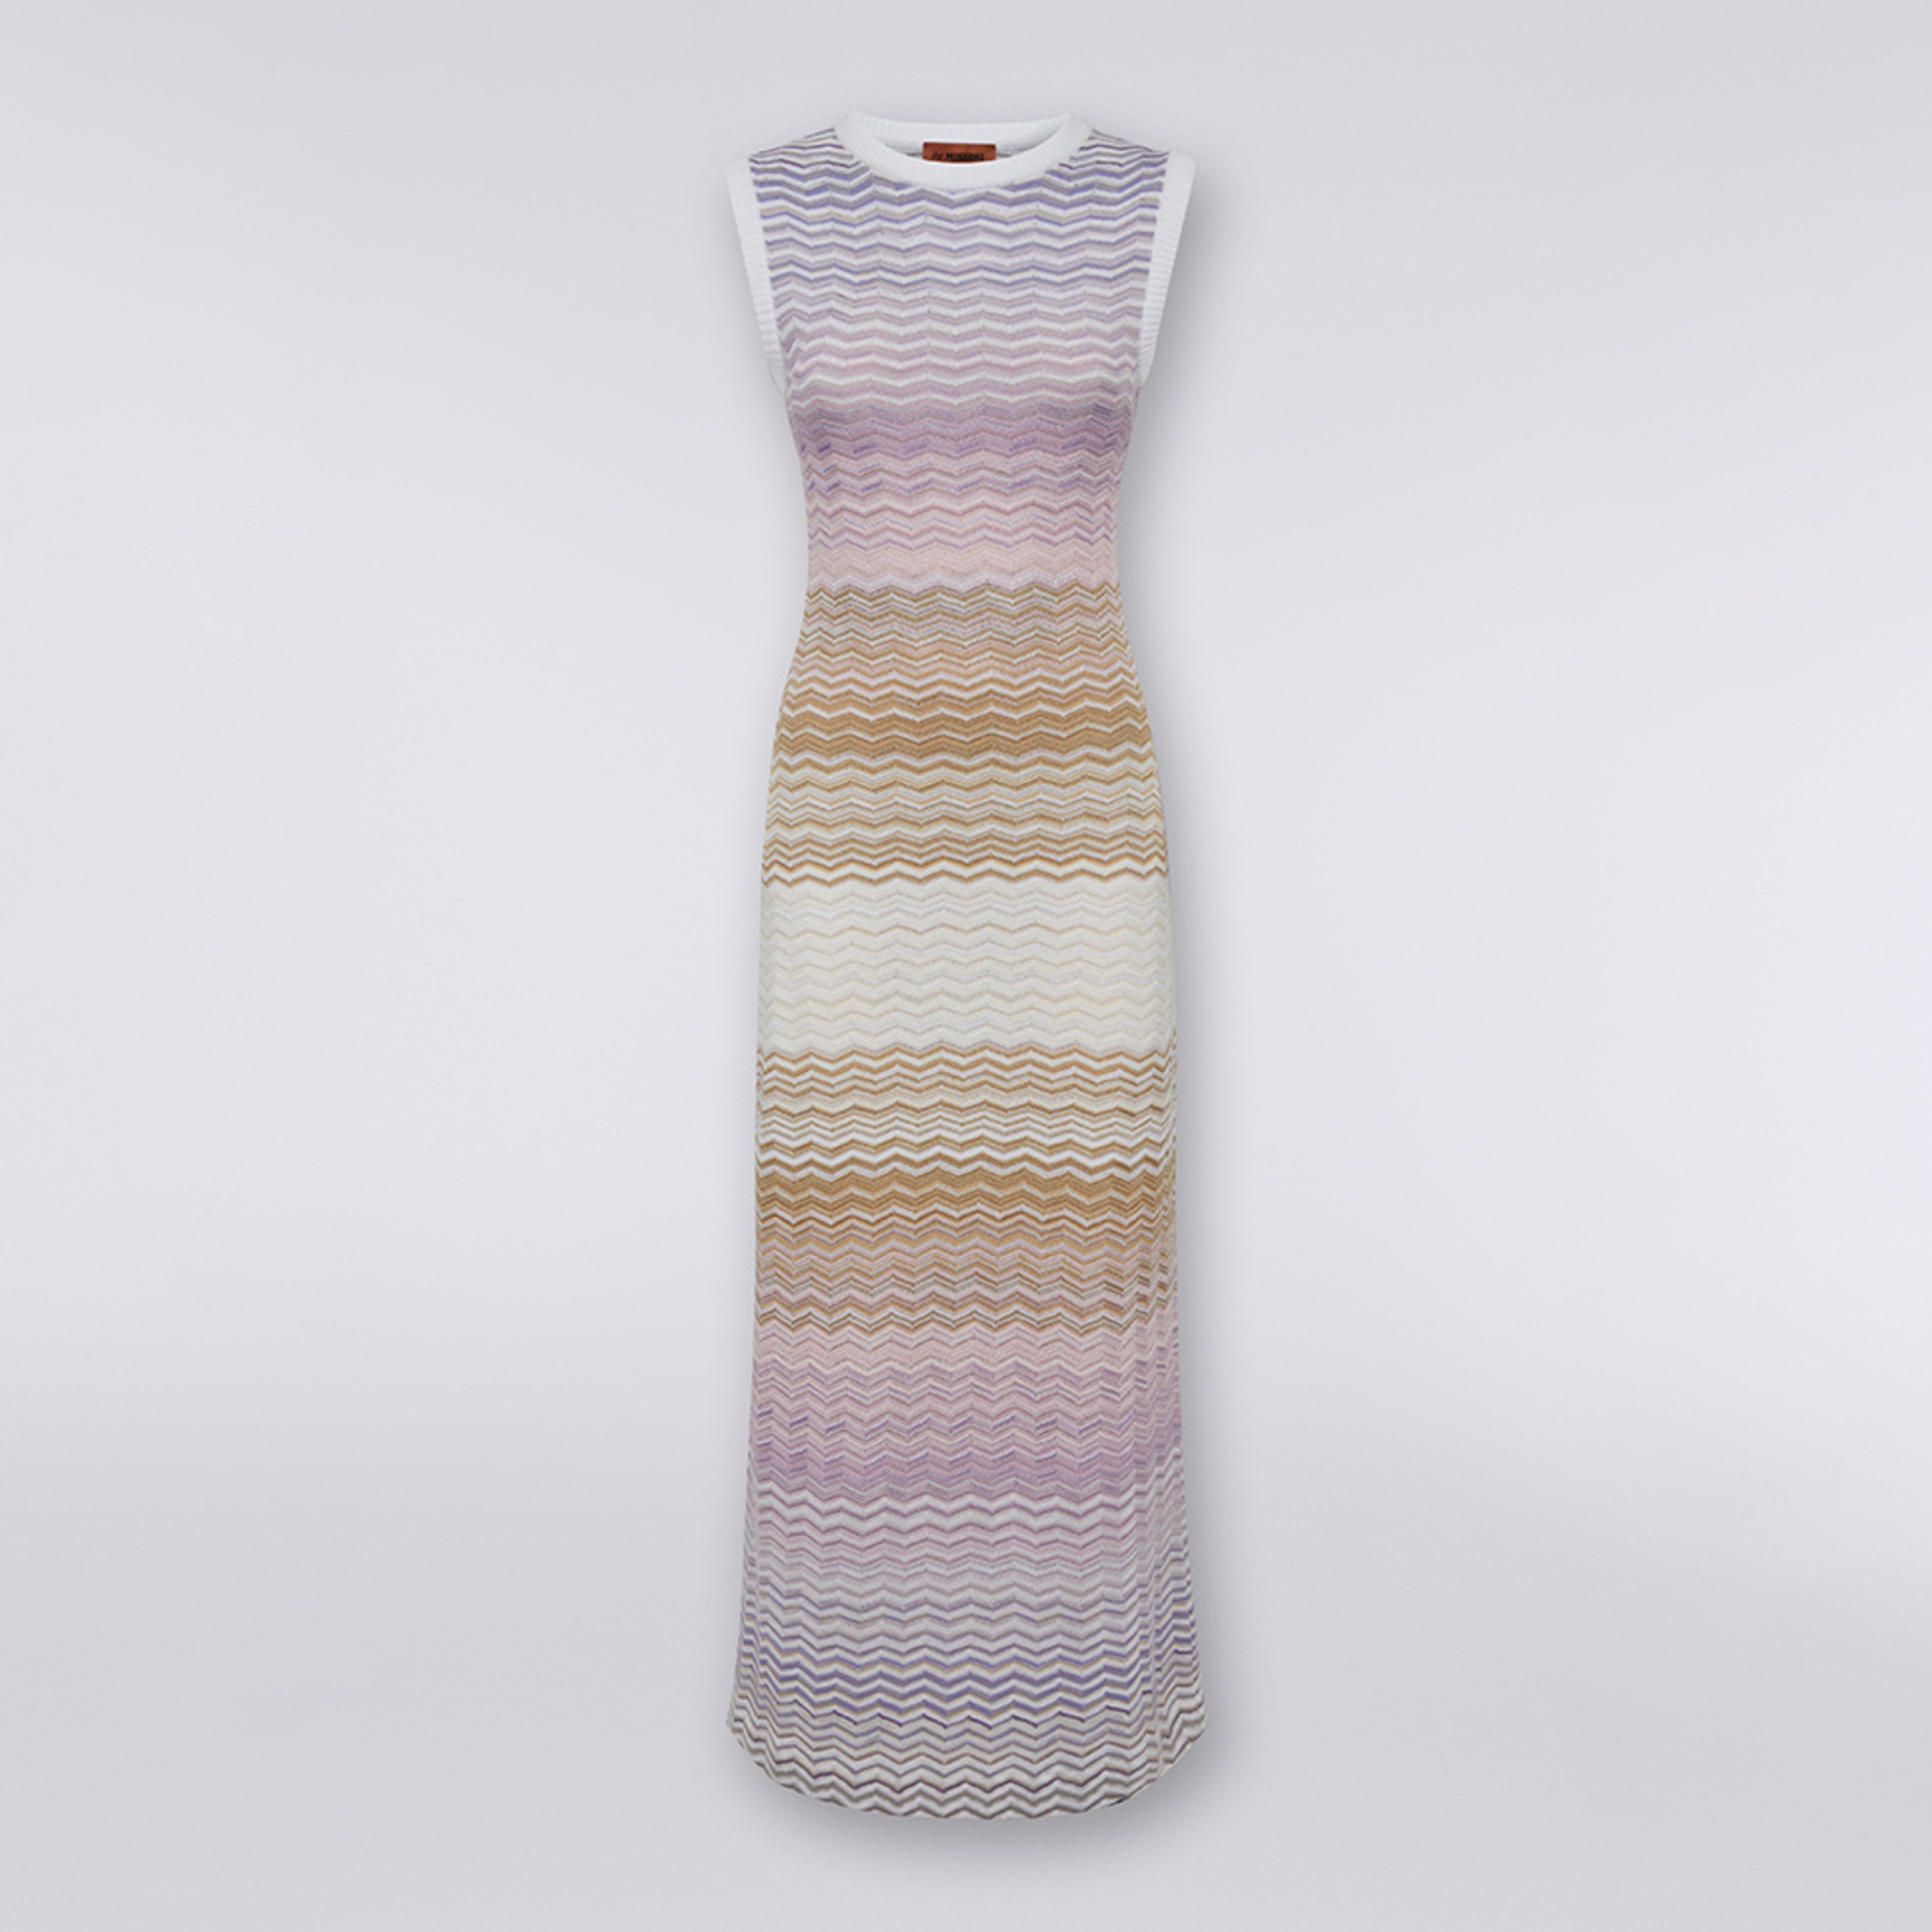 Langes, ärmelloses Kleid aus Baumwolle und Viskose mit Chevronmuster , Mehrfarbig  - 5